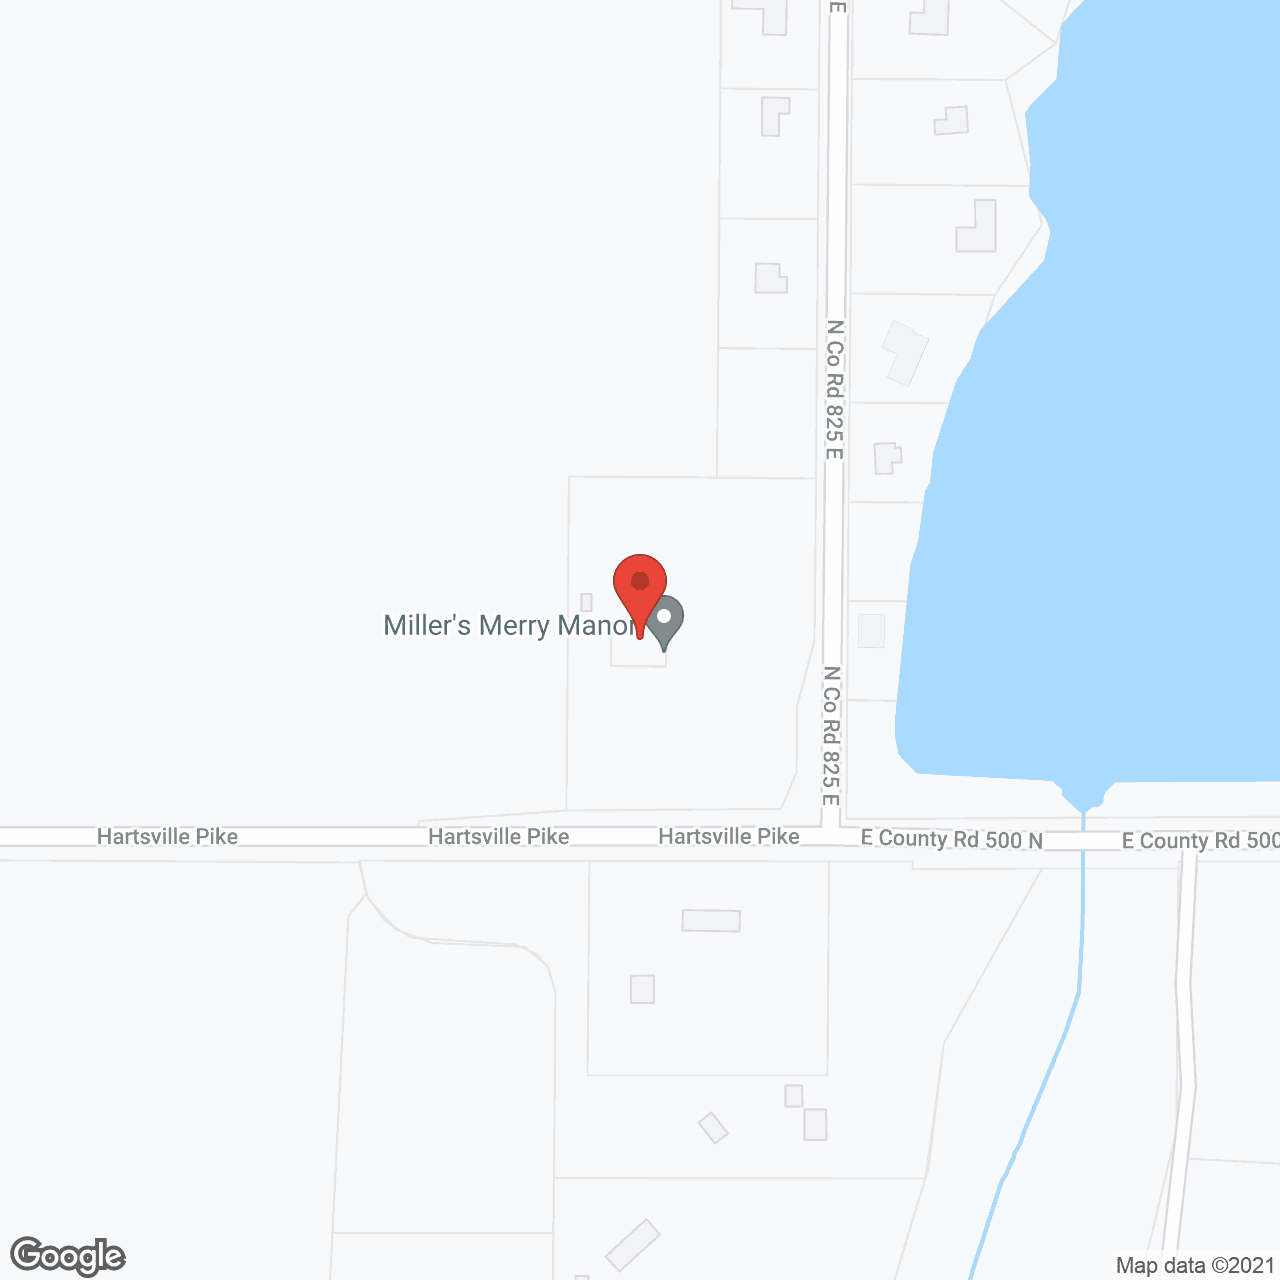 Miller's Merry Manor in google map